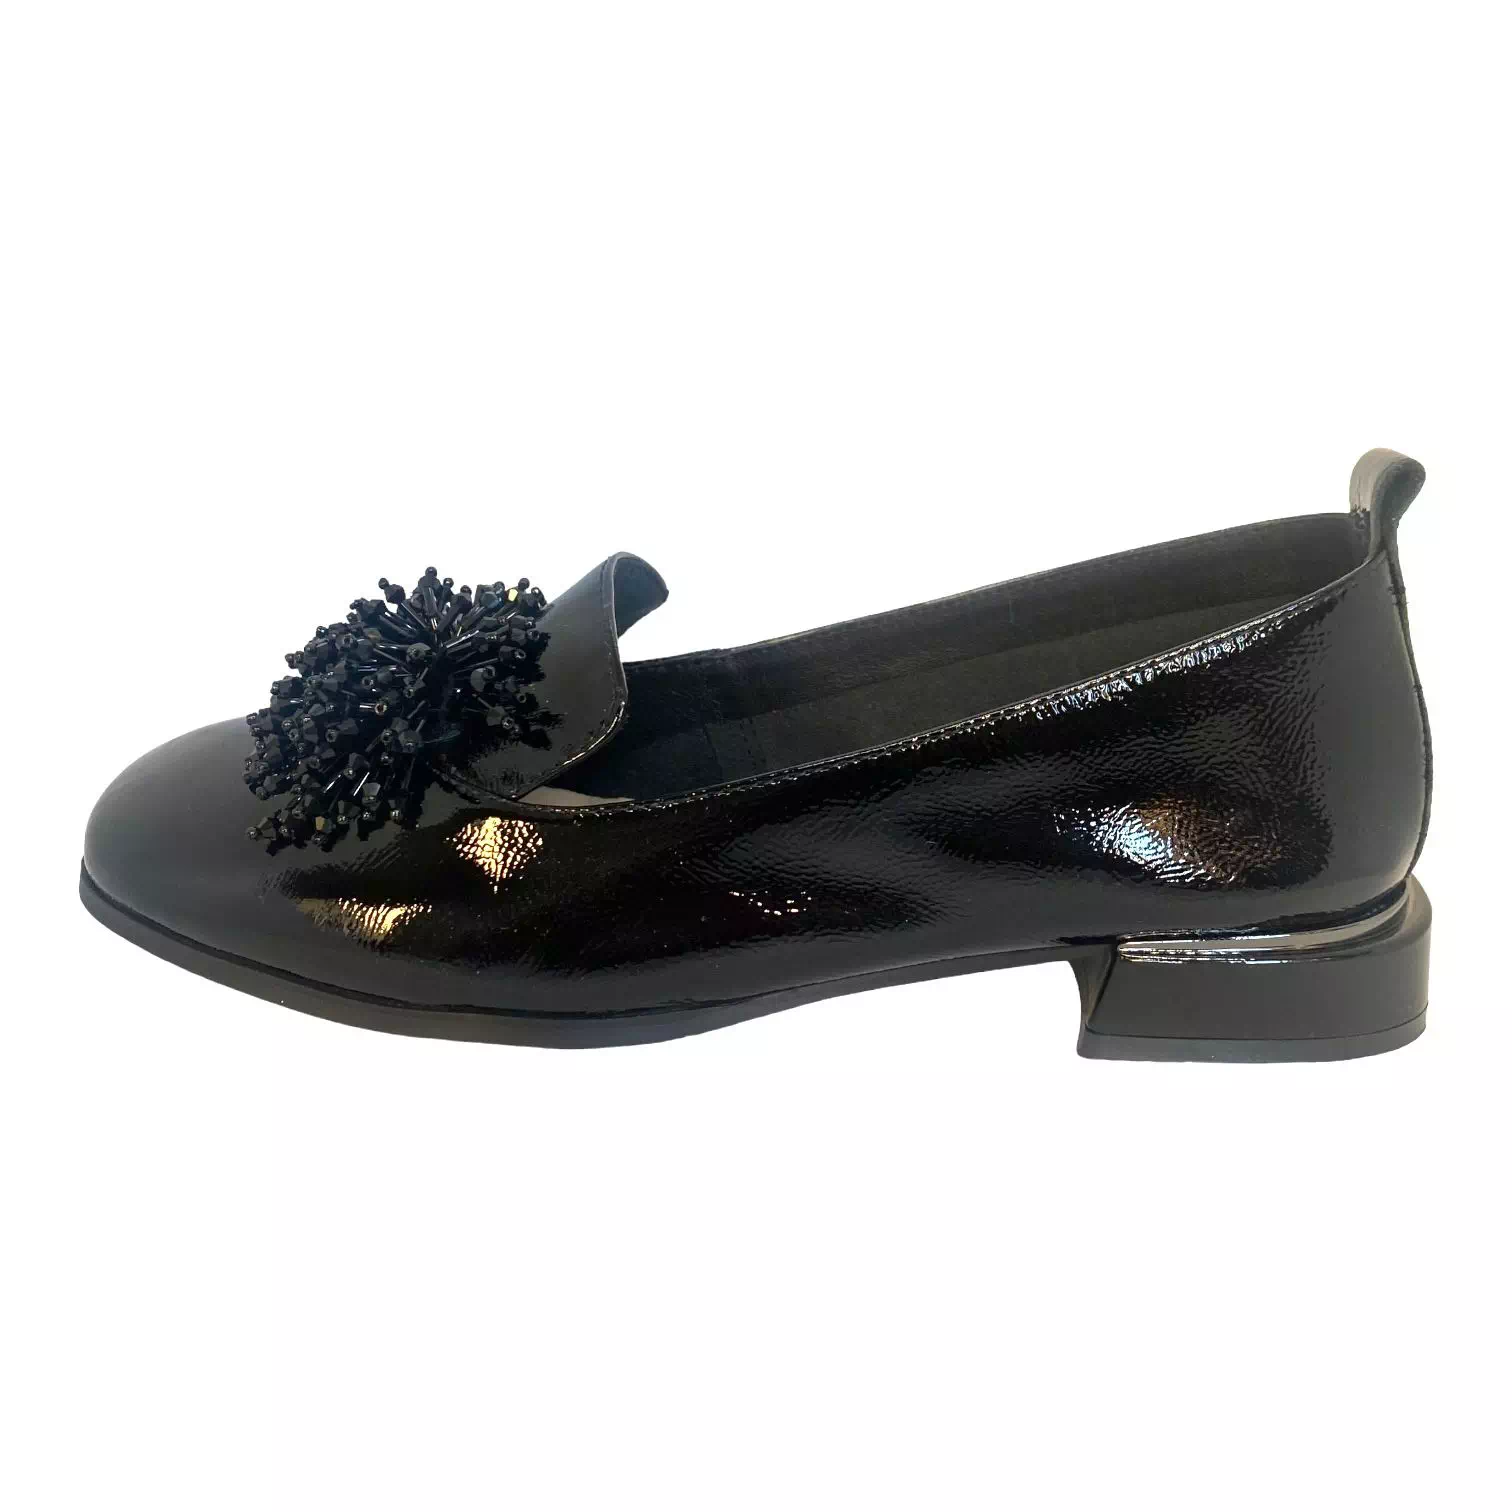 Pantofi Epica negri din lac cu accesoriu